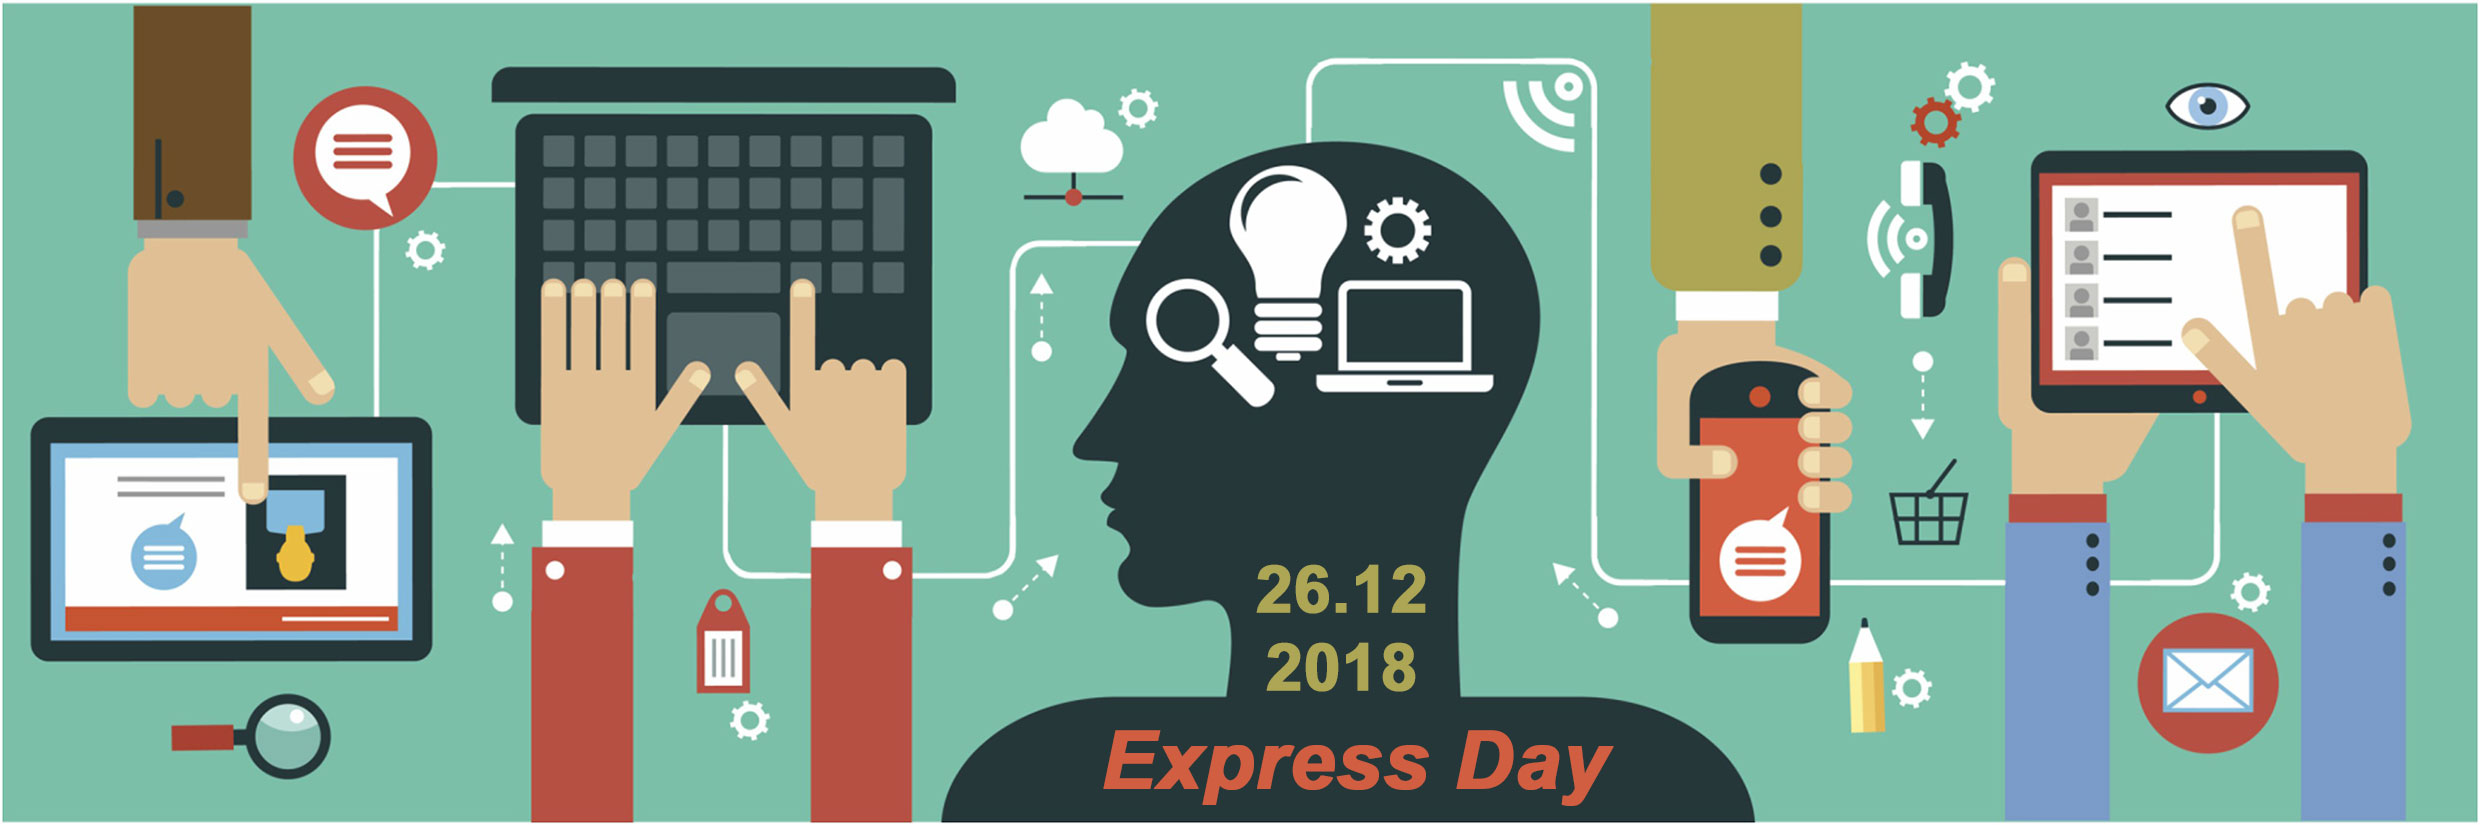 Express Day shapka bv 26.12